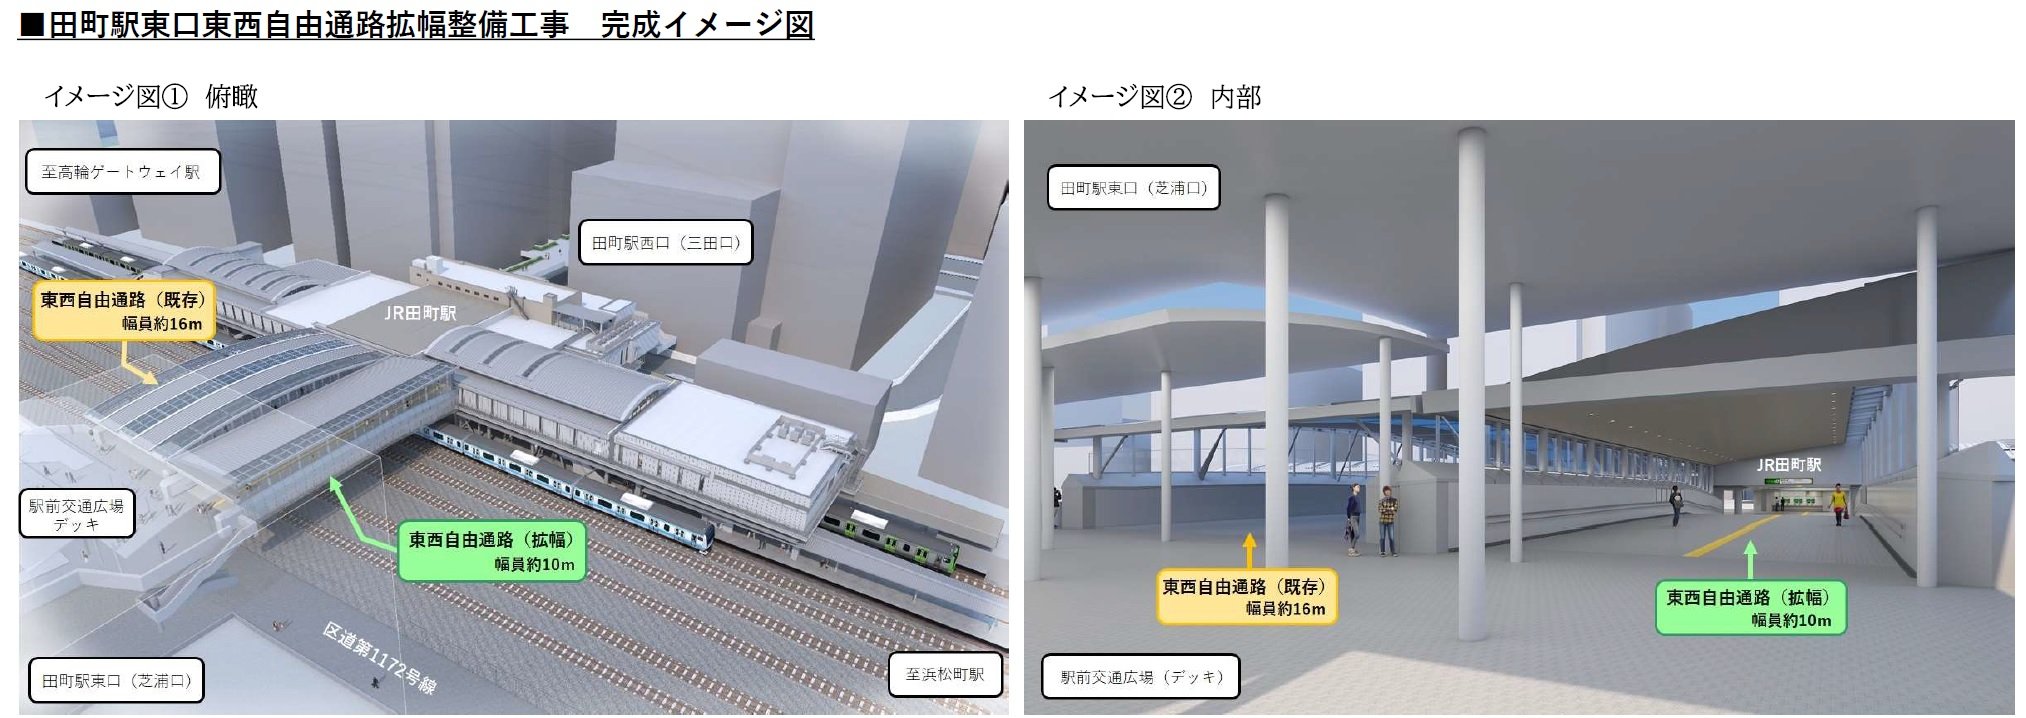 【2022年7月13日】田町駅芝浦口デッキ等の最終形態整備を情報提供